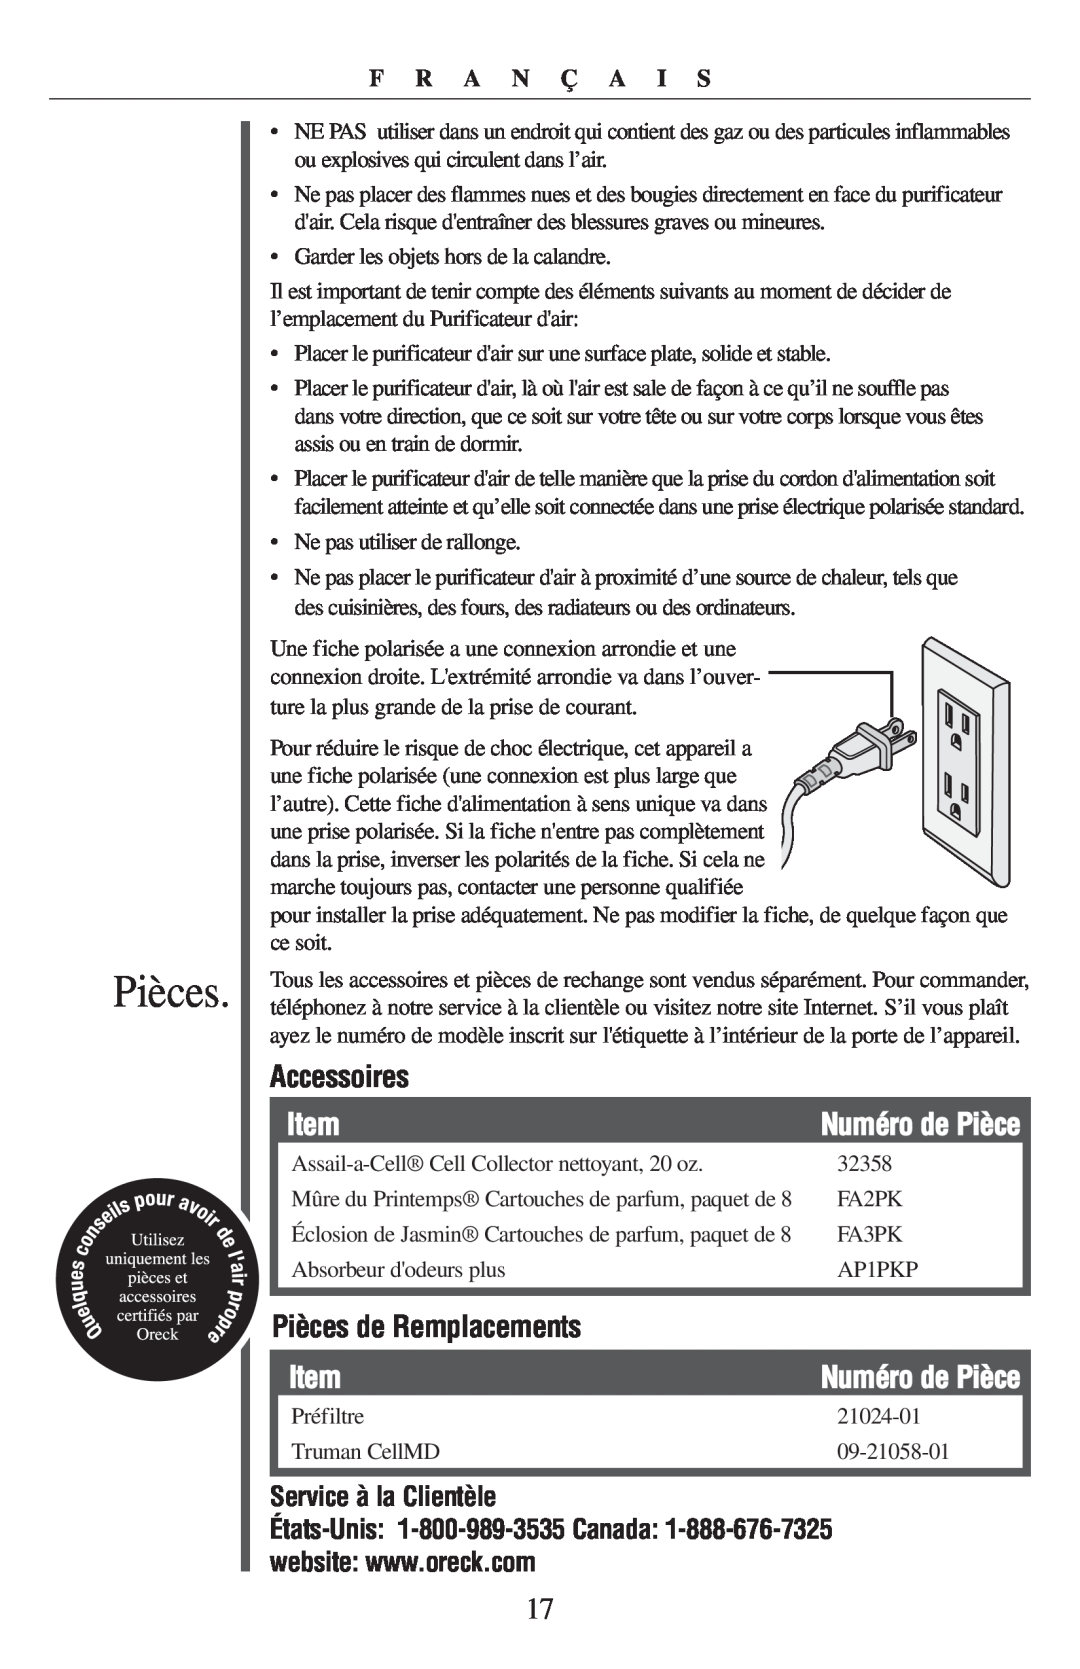 Oreck 21057-03 manual Accessoires, Pièces de Remplacements, Service à la Clientèle, F R A N Ç A I S, Numéro de Pièce 